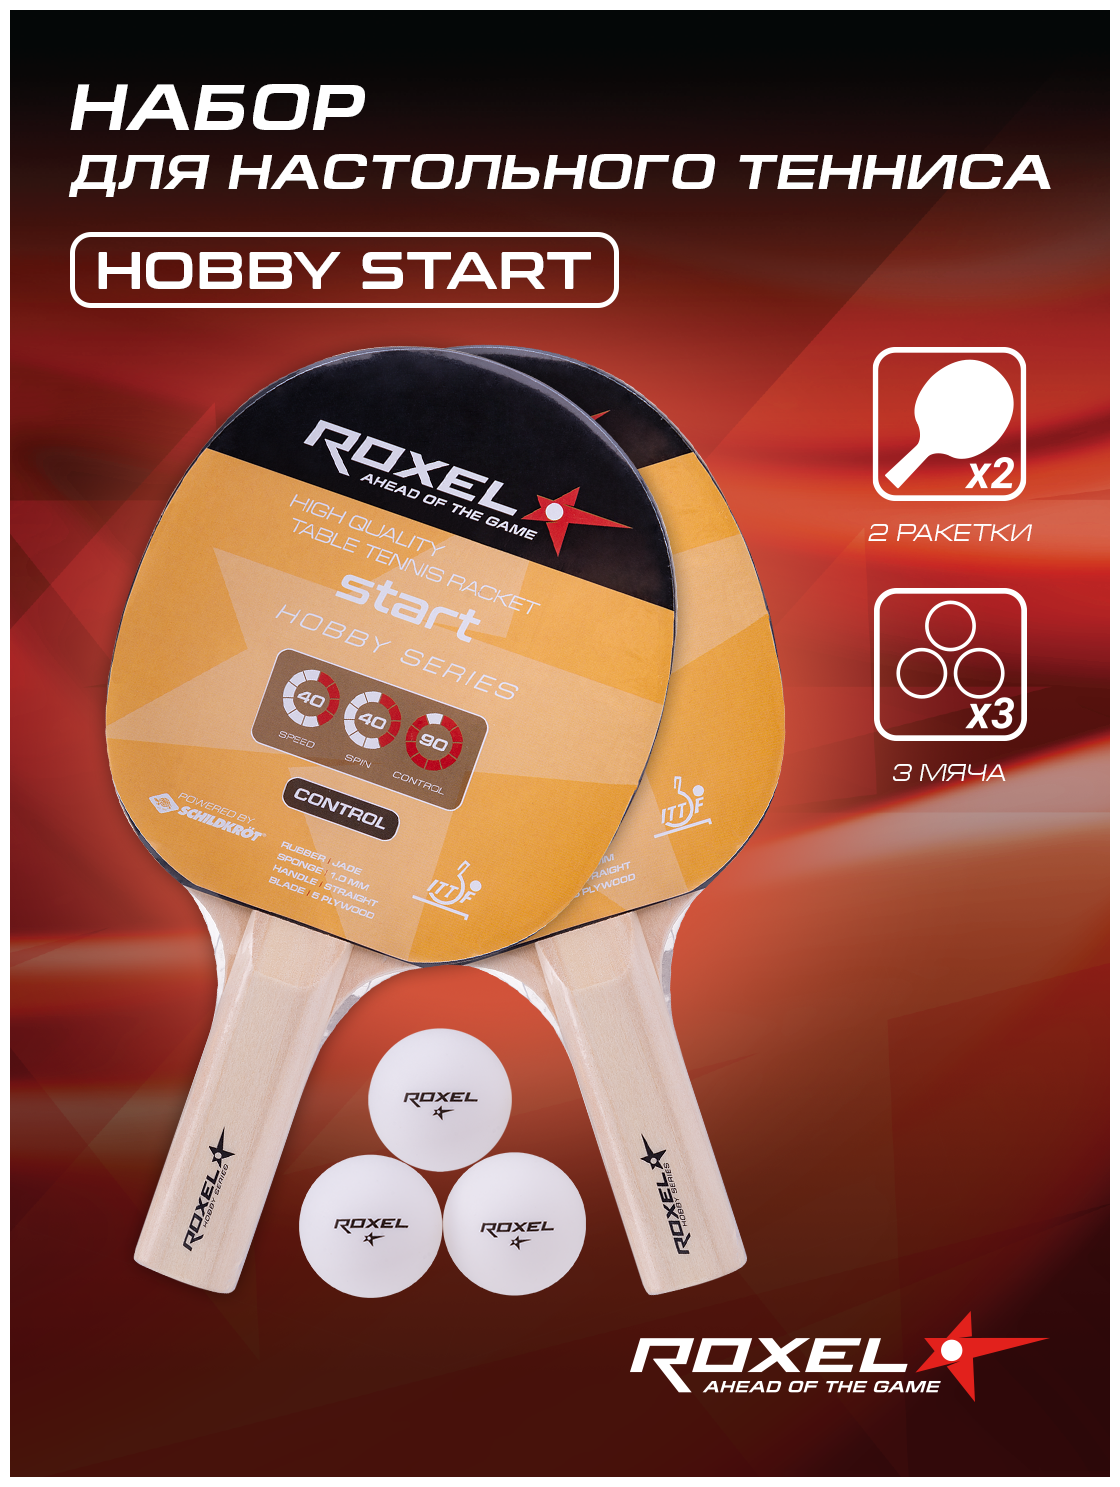 Набор н/т Roxel Hobby Start (2 ракетки + 3 мяча)